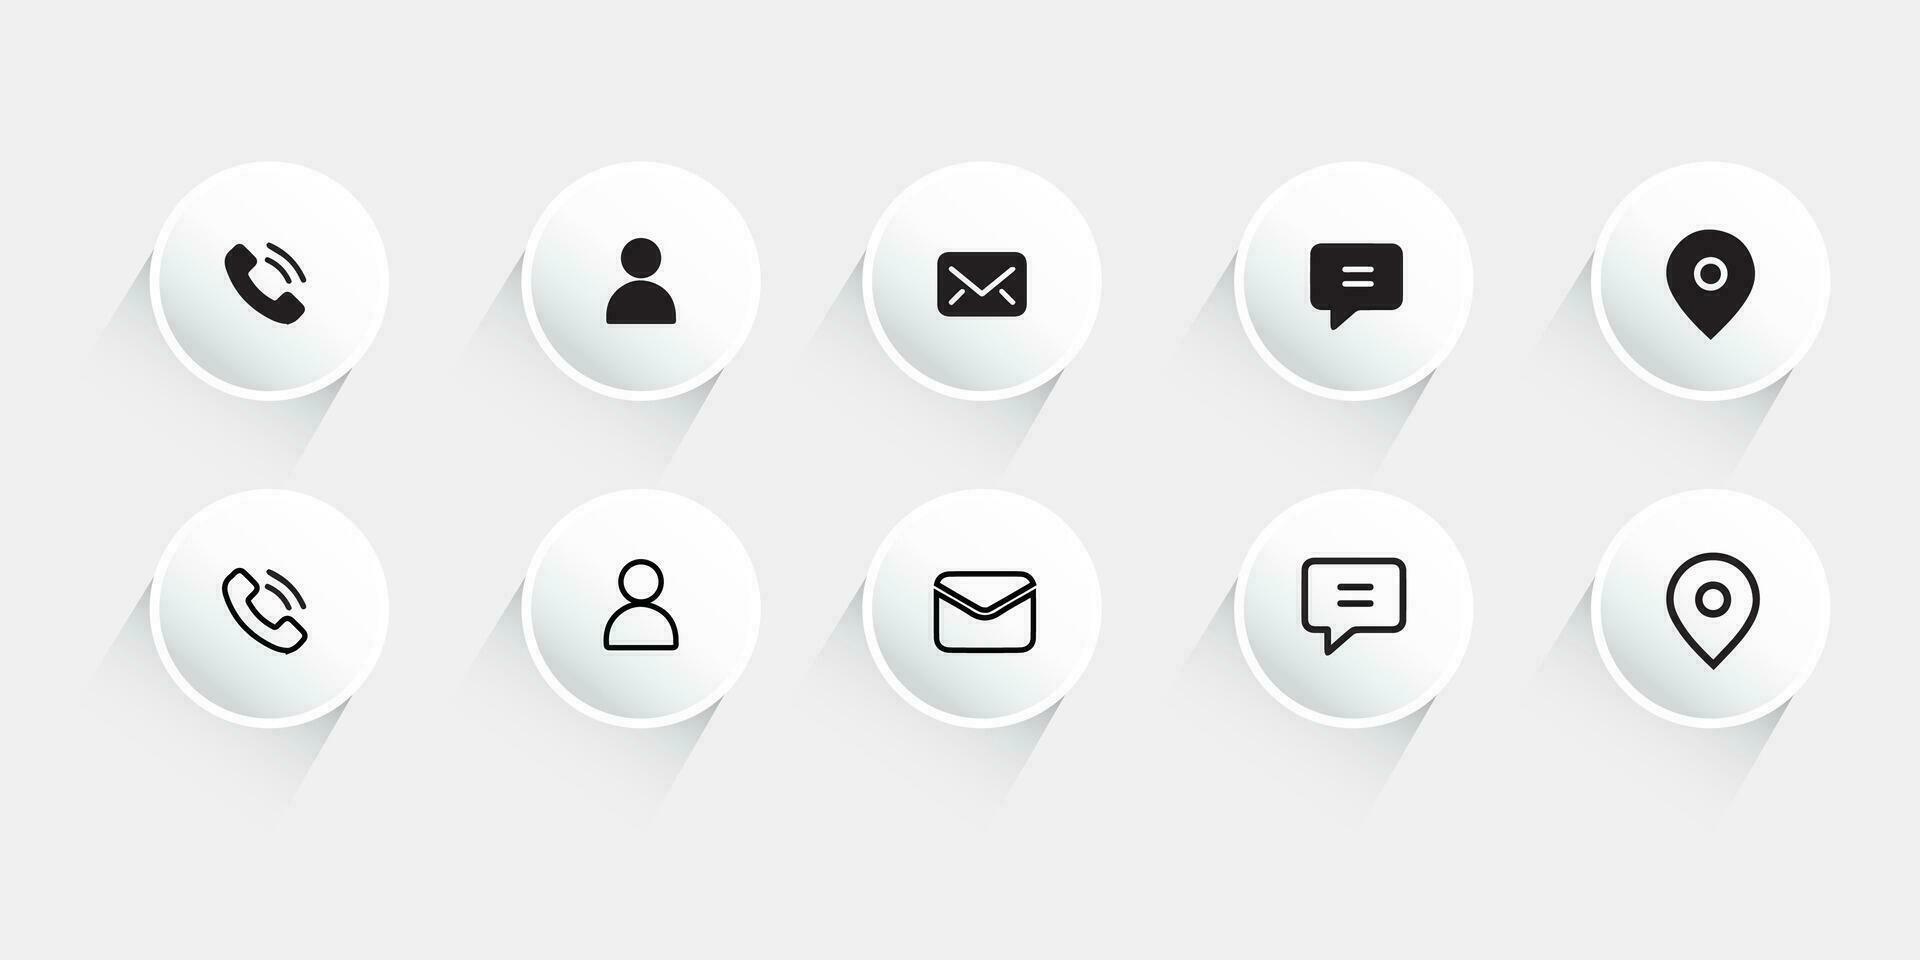 Kontakt oss ikon ange.kontakt och kommunikation icons.set av kommunikation ikon. vektor